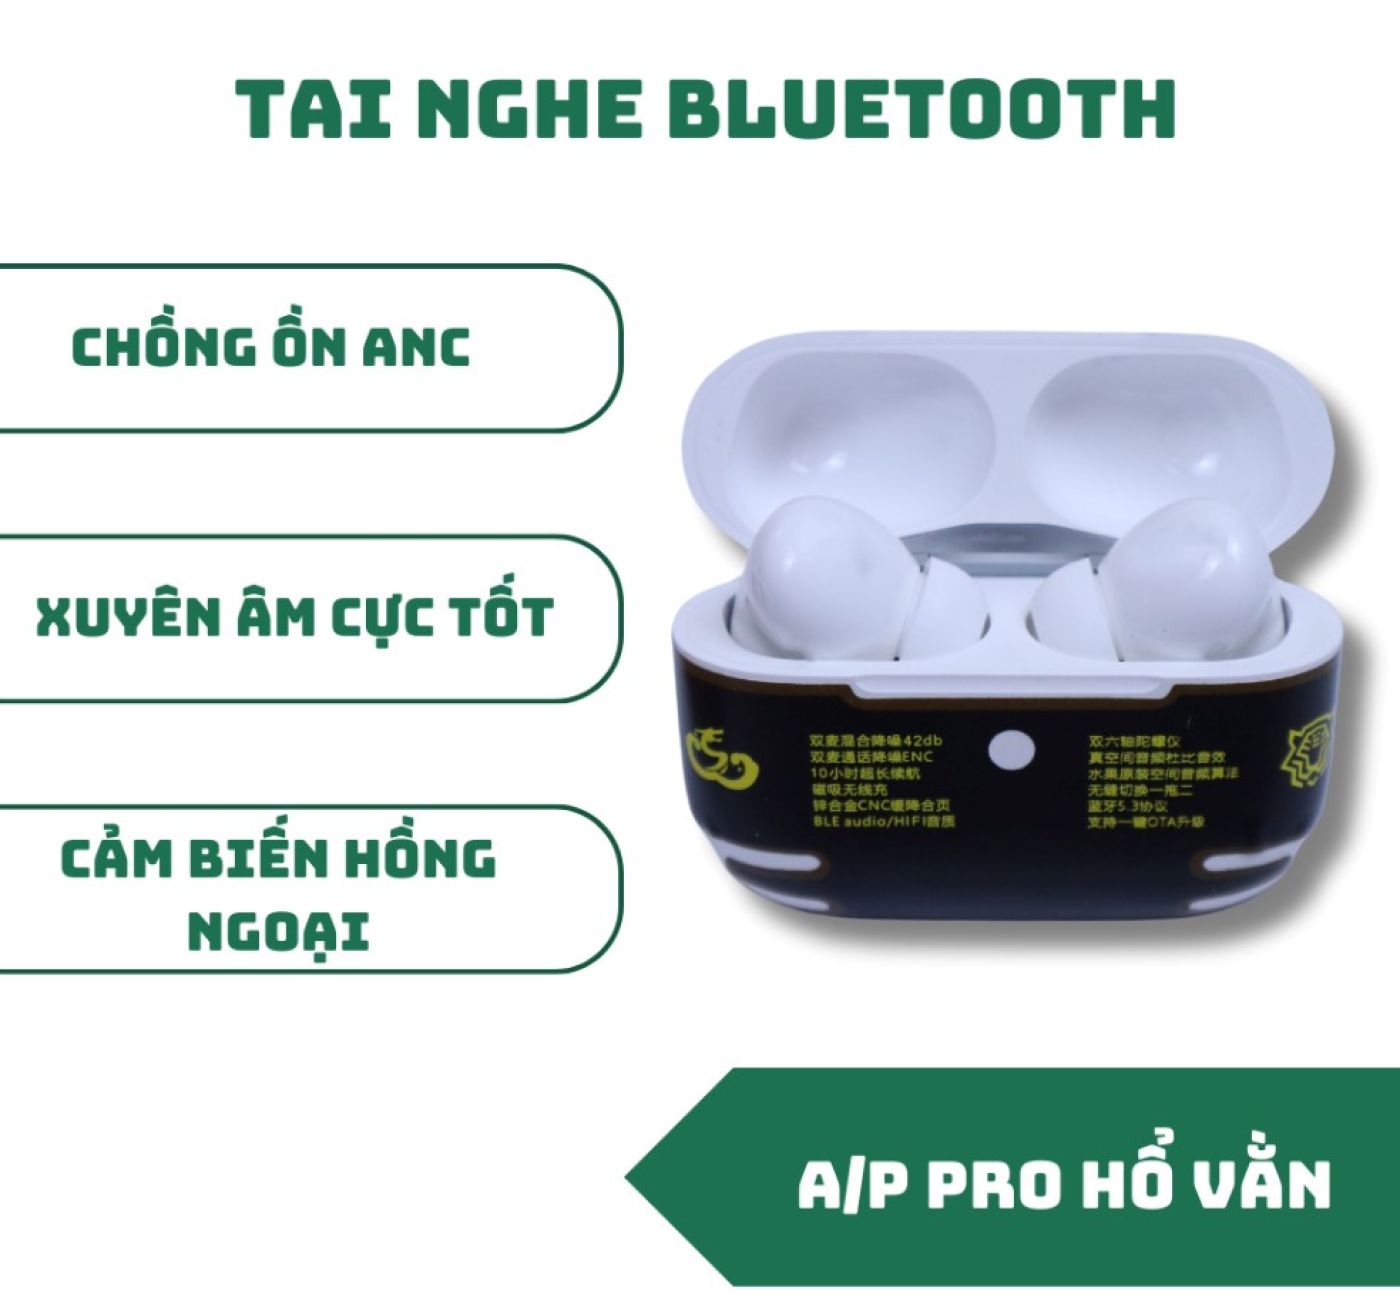 Tai Nghe Bluetooth A/P PRO Hổ Vằn 1562A (Bass căng, Treble cao, Pin trâu) - BH 3 tháng 1 đổi 1